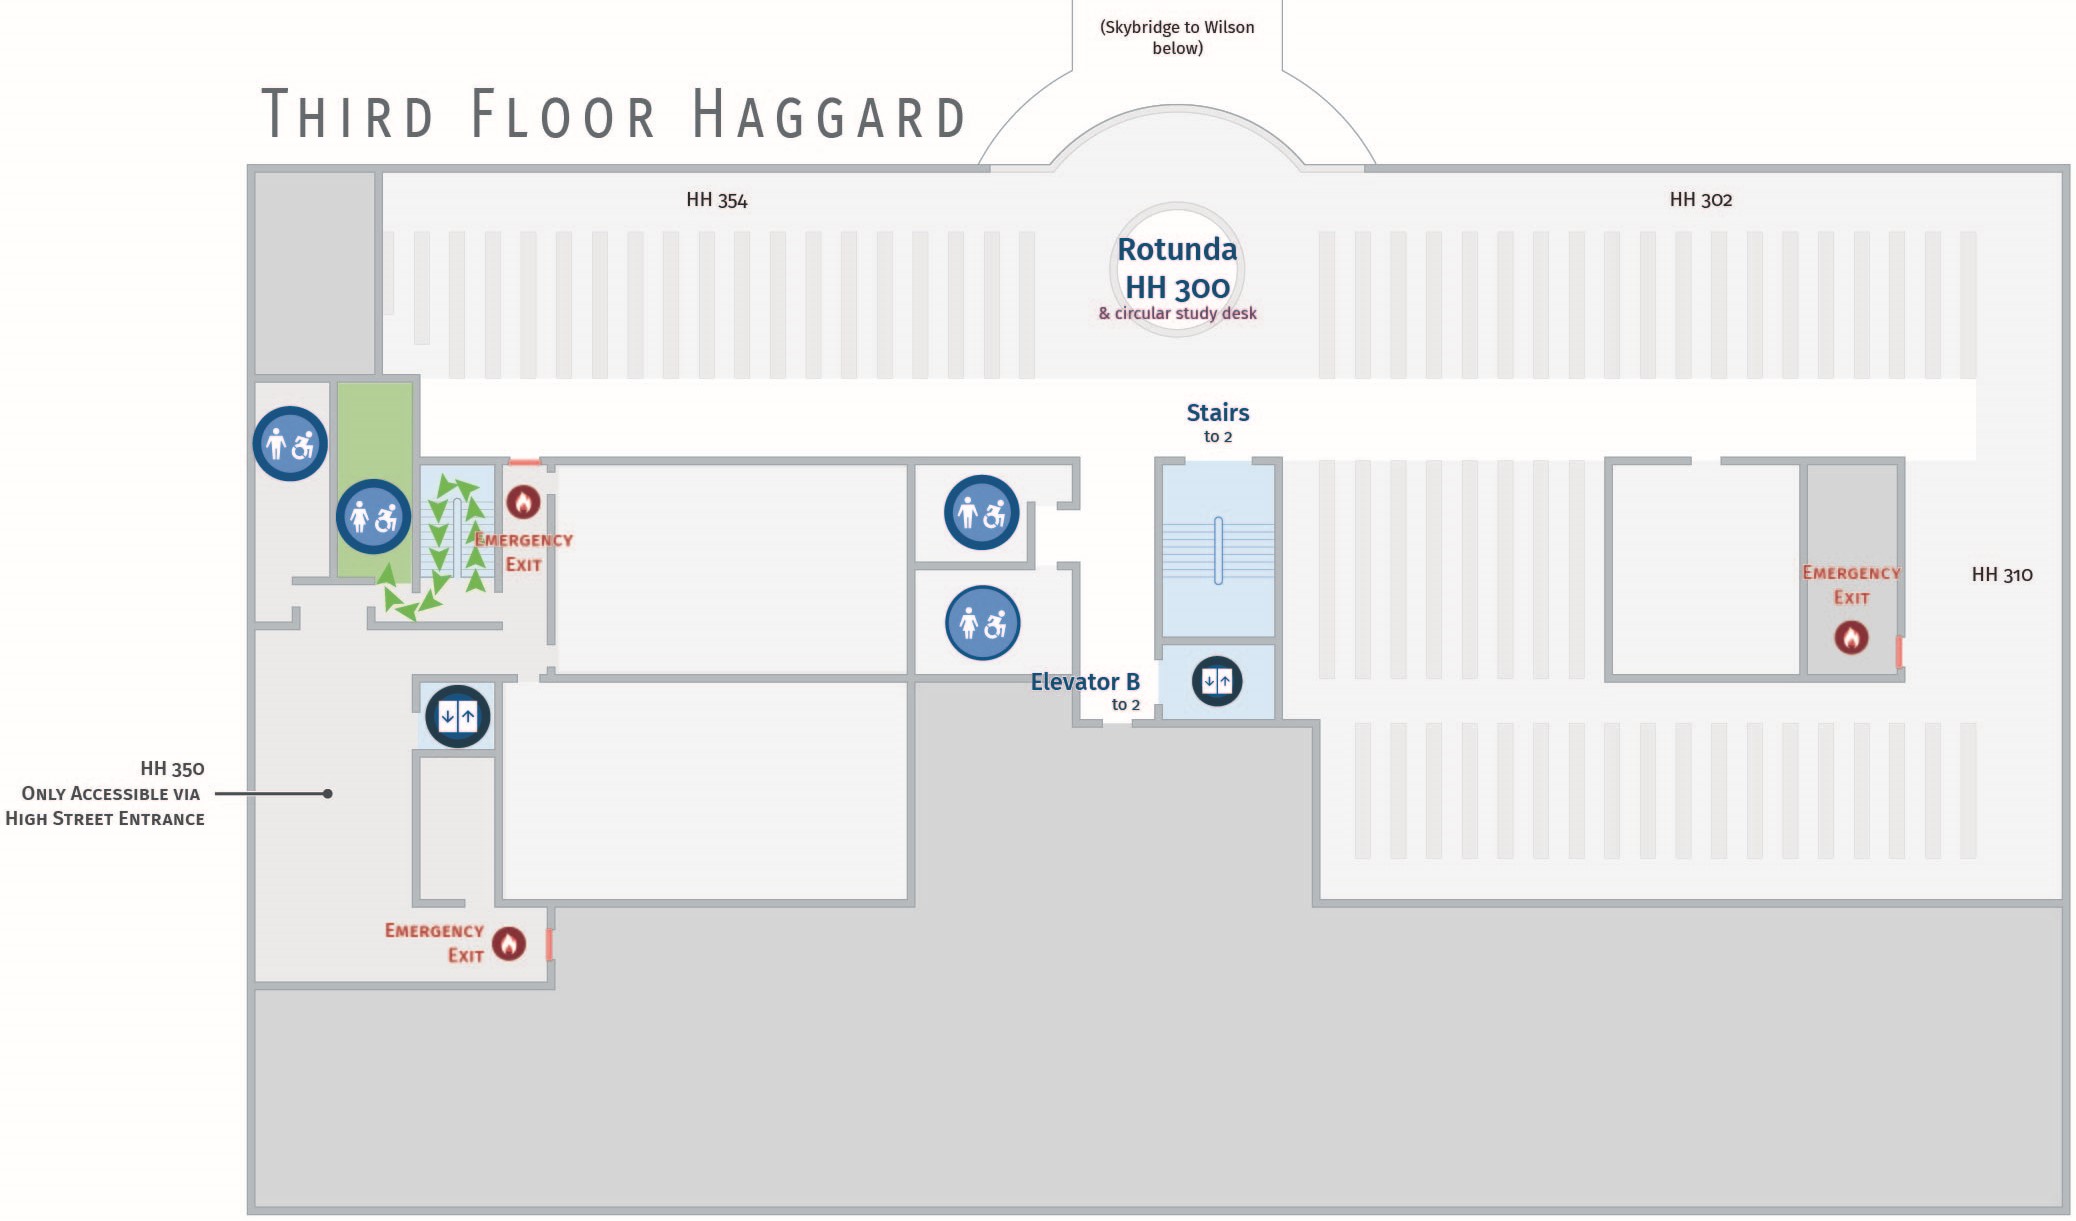 Floor plan, third floor of Haggard with path to women's restroom. Haggard 352.